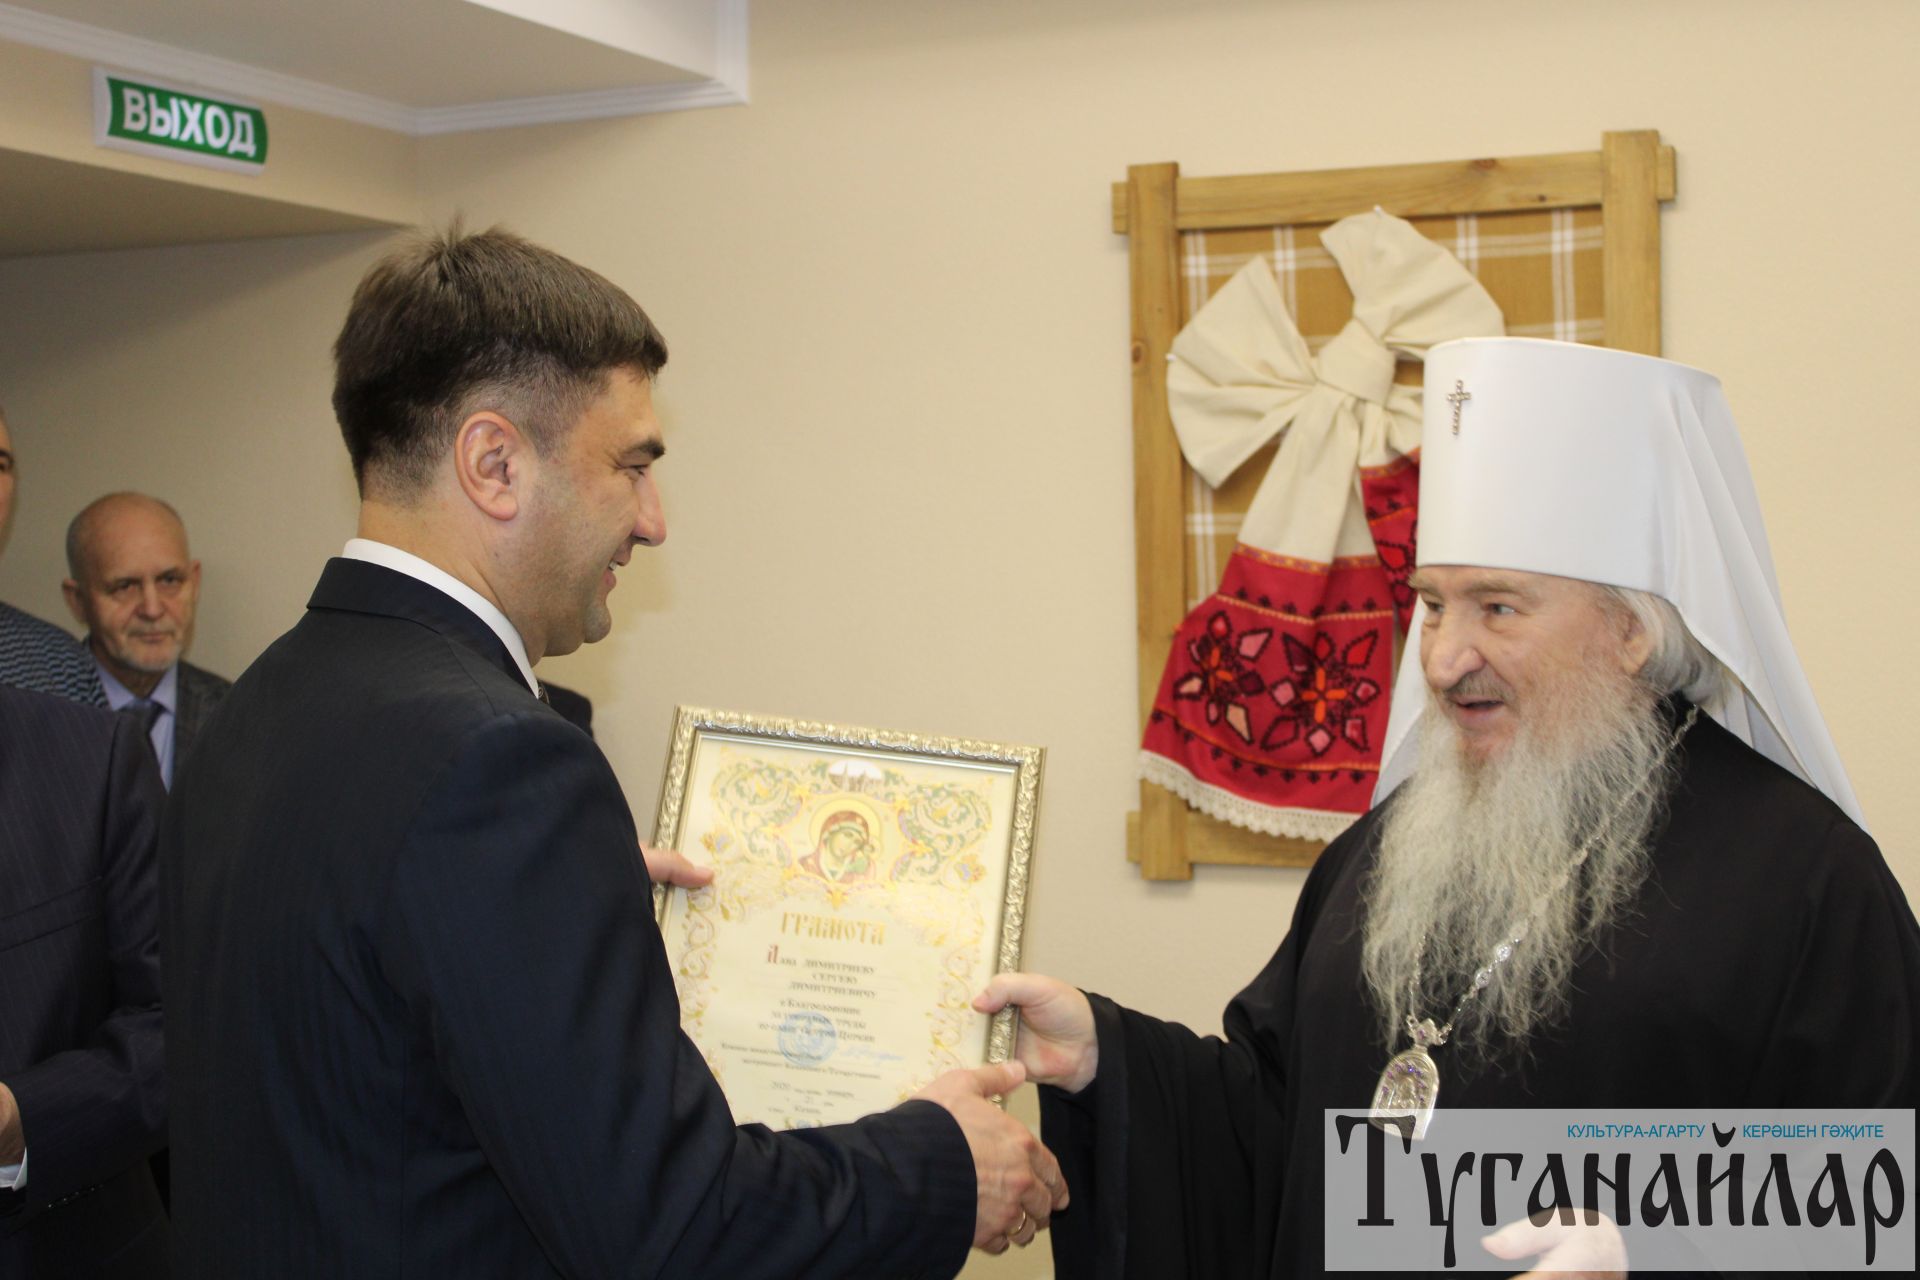 Иван Егоров встретился с митрополитом Феофаном